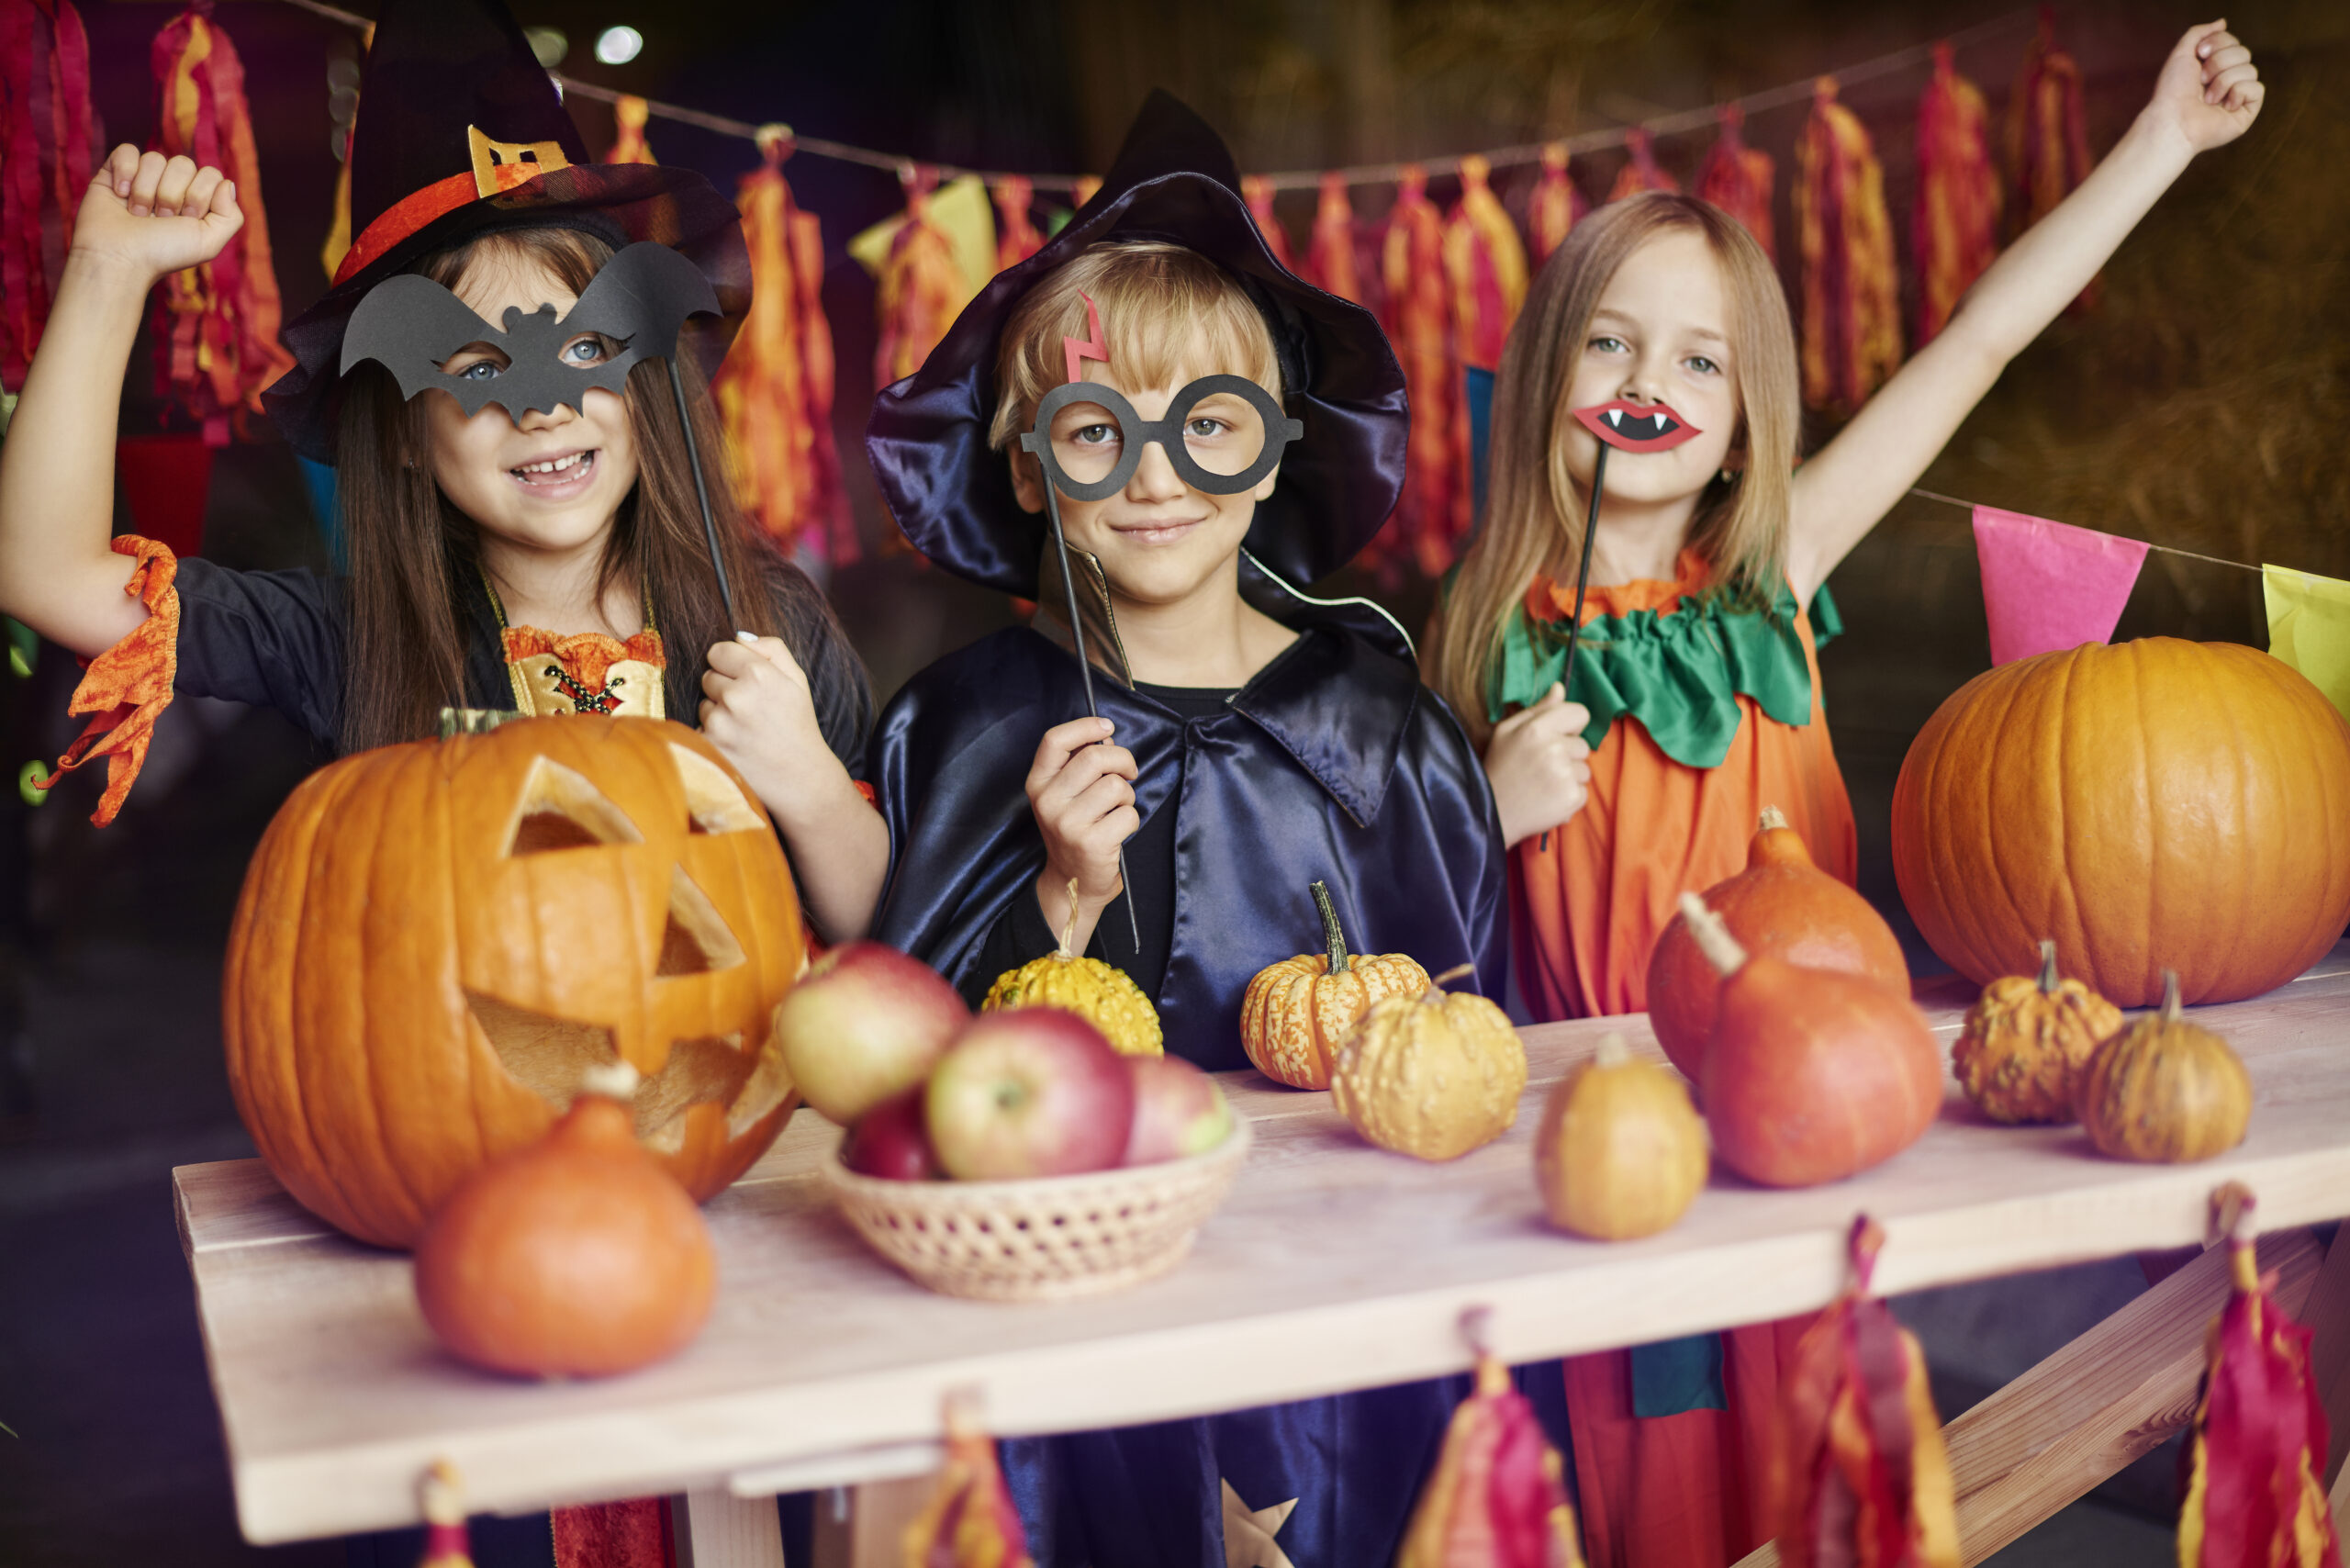 Dwie dziewczynki i chłopiec przebrani za czarodziejów pozują z akcesoriami halloweenowymi, wycietymi dyniami i maskami w ksztalcie nietoperzy.